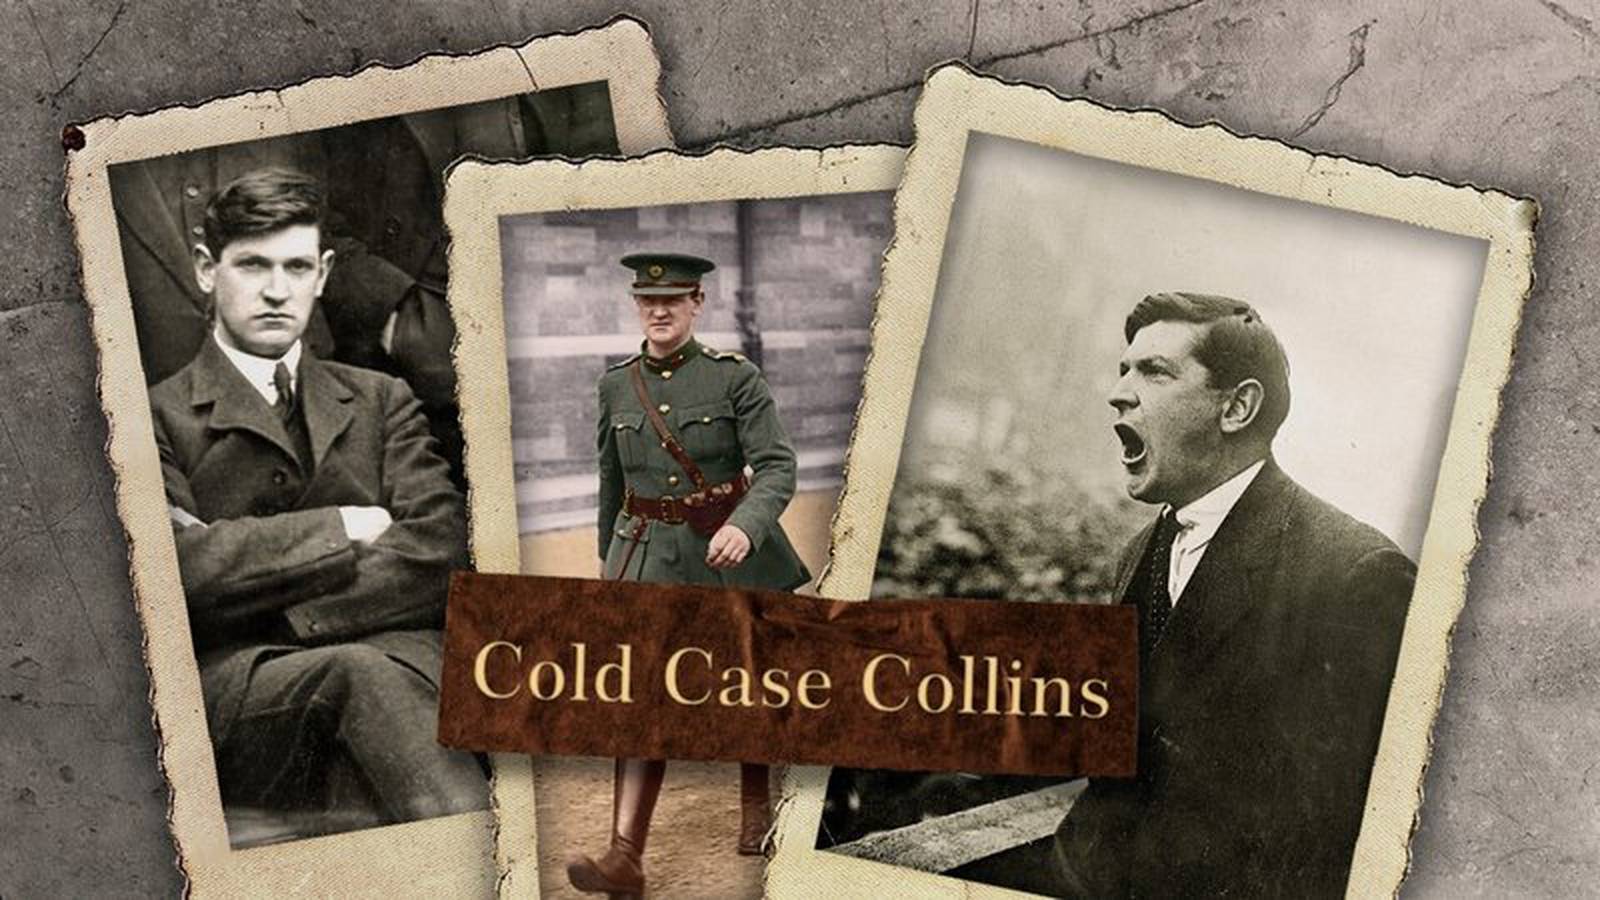 Michael Collins, Cold Case Collins